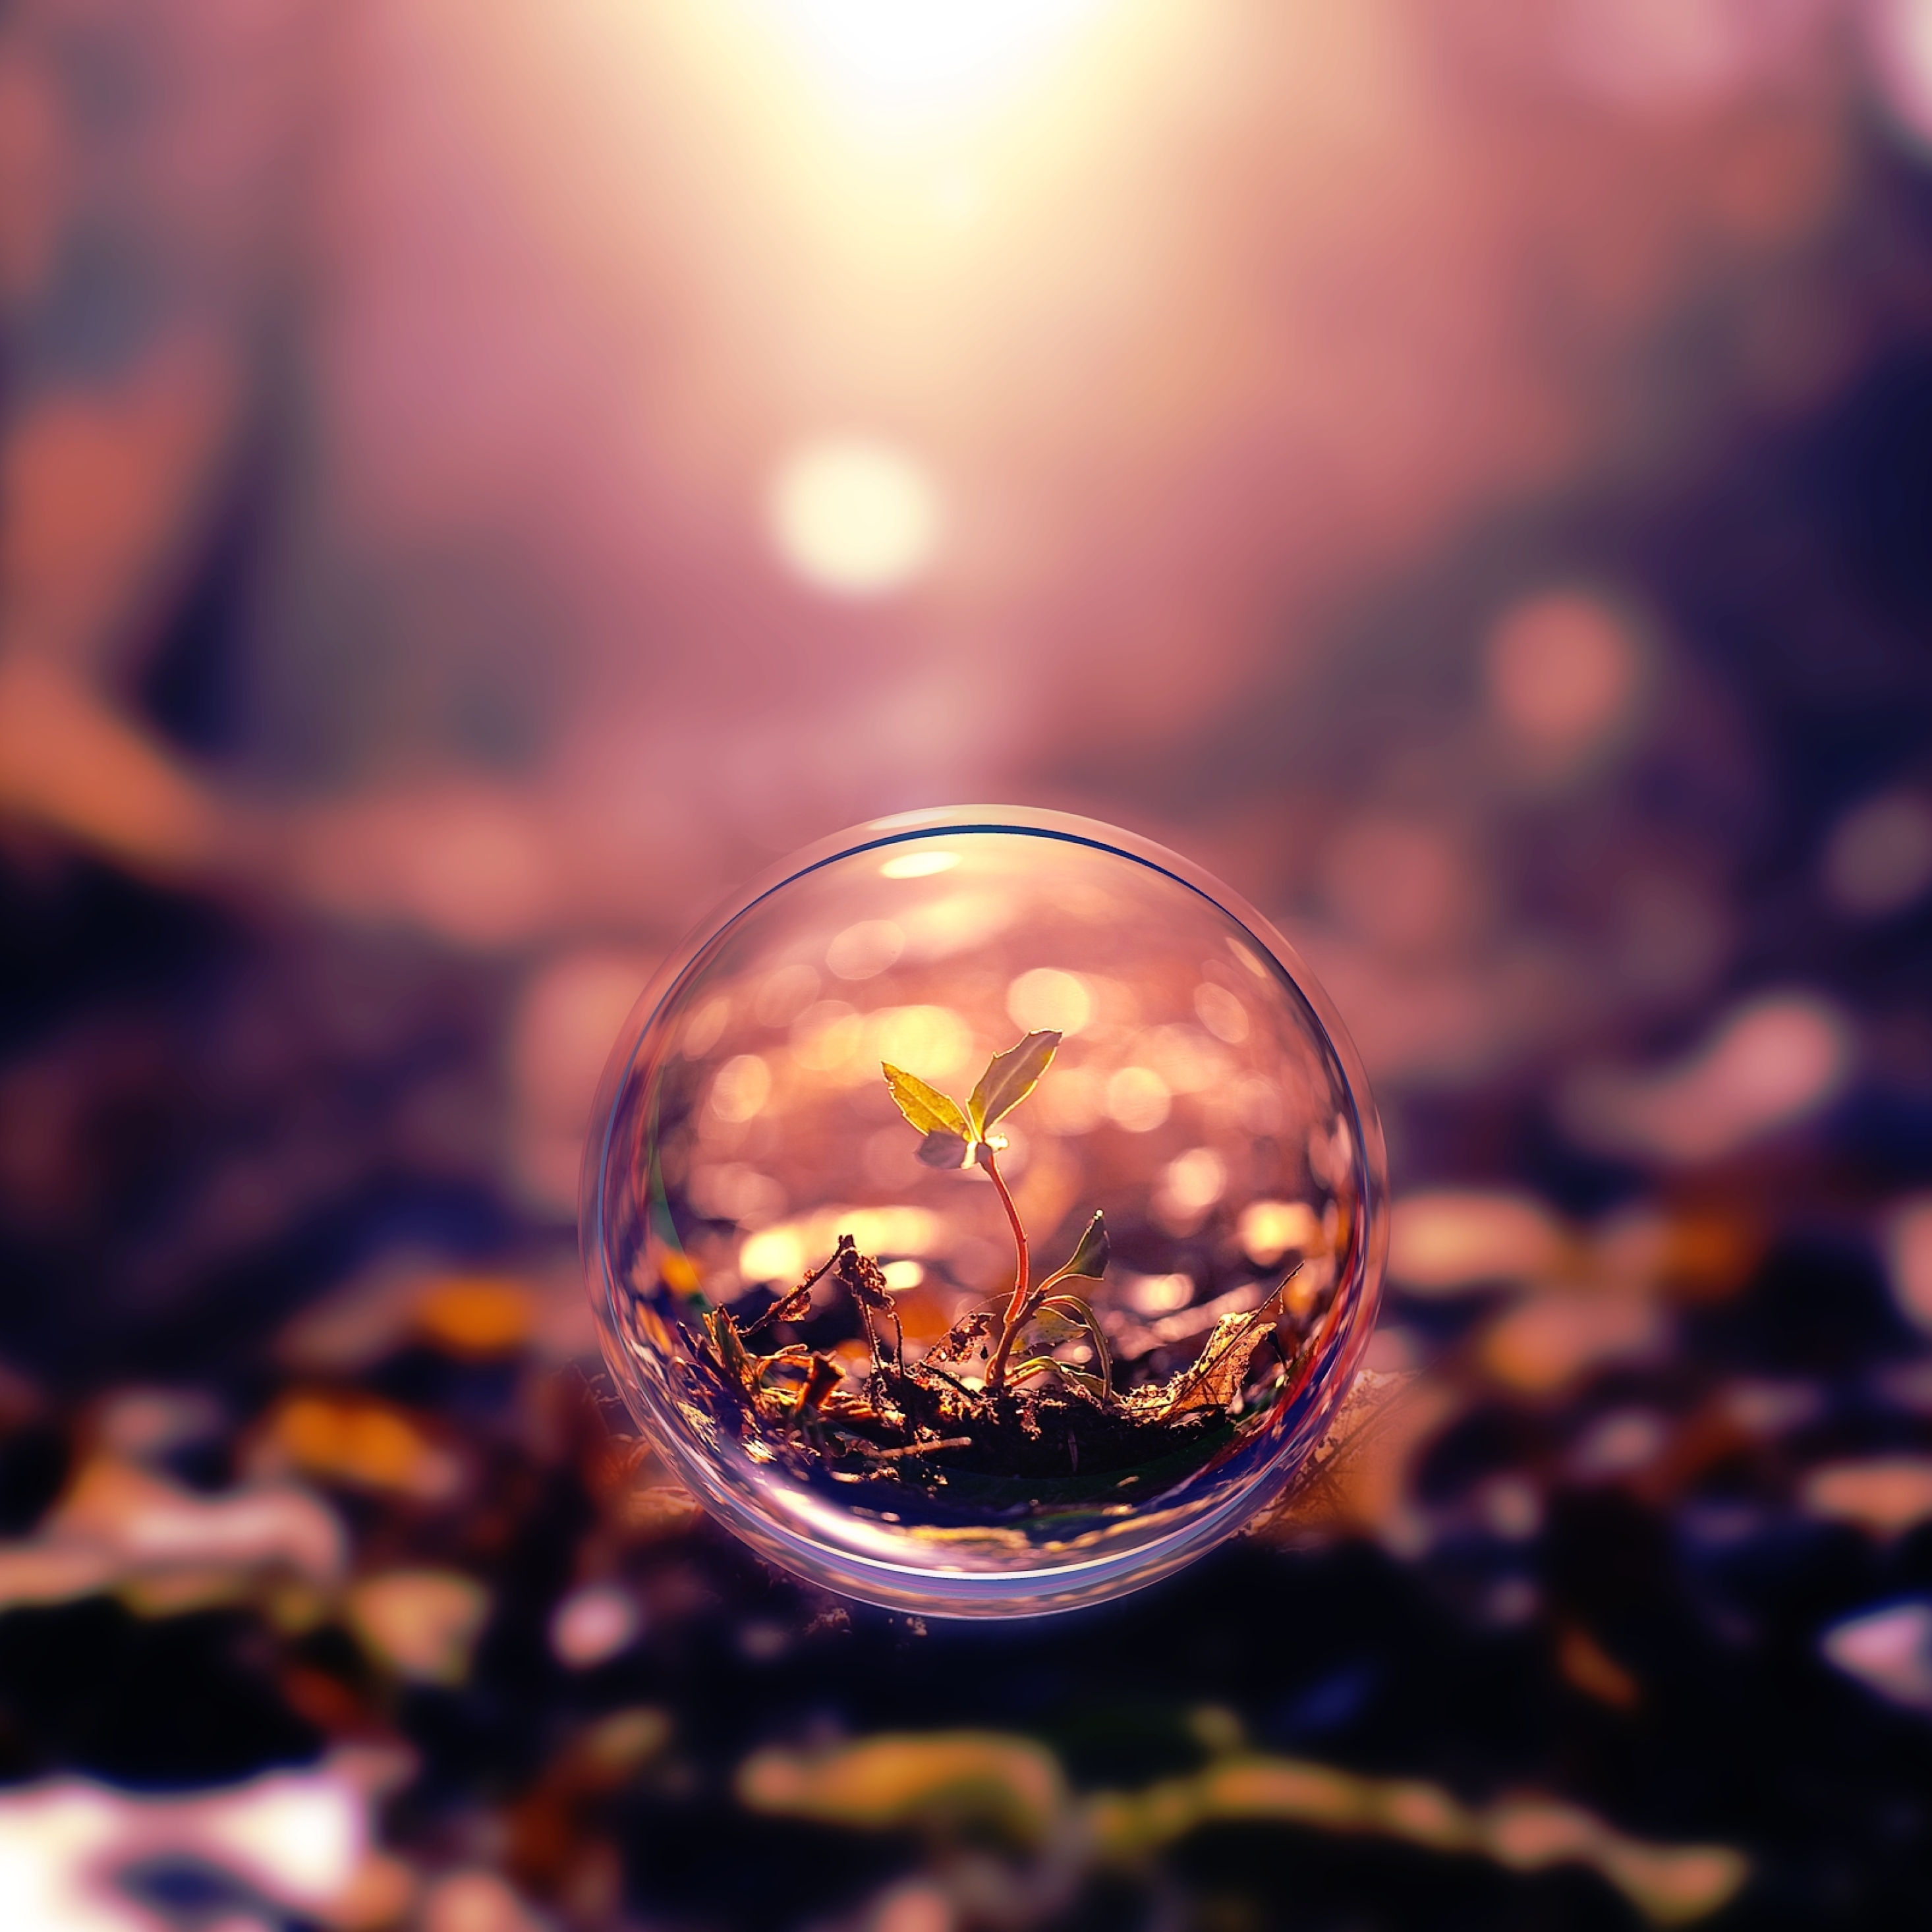 عکس جدید سه بعدی زیبا حرفه ای گیاه در حباب با زمینه مات